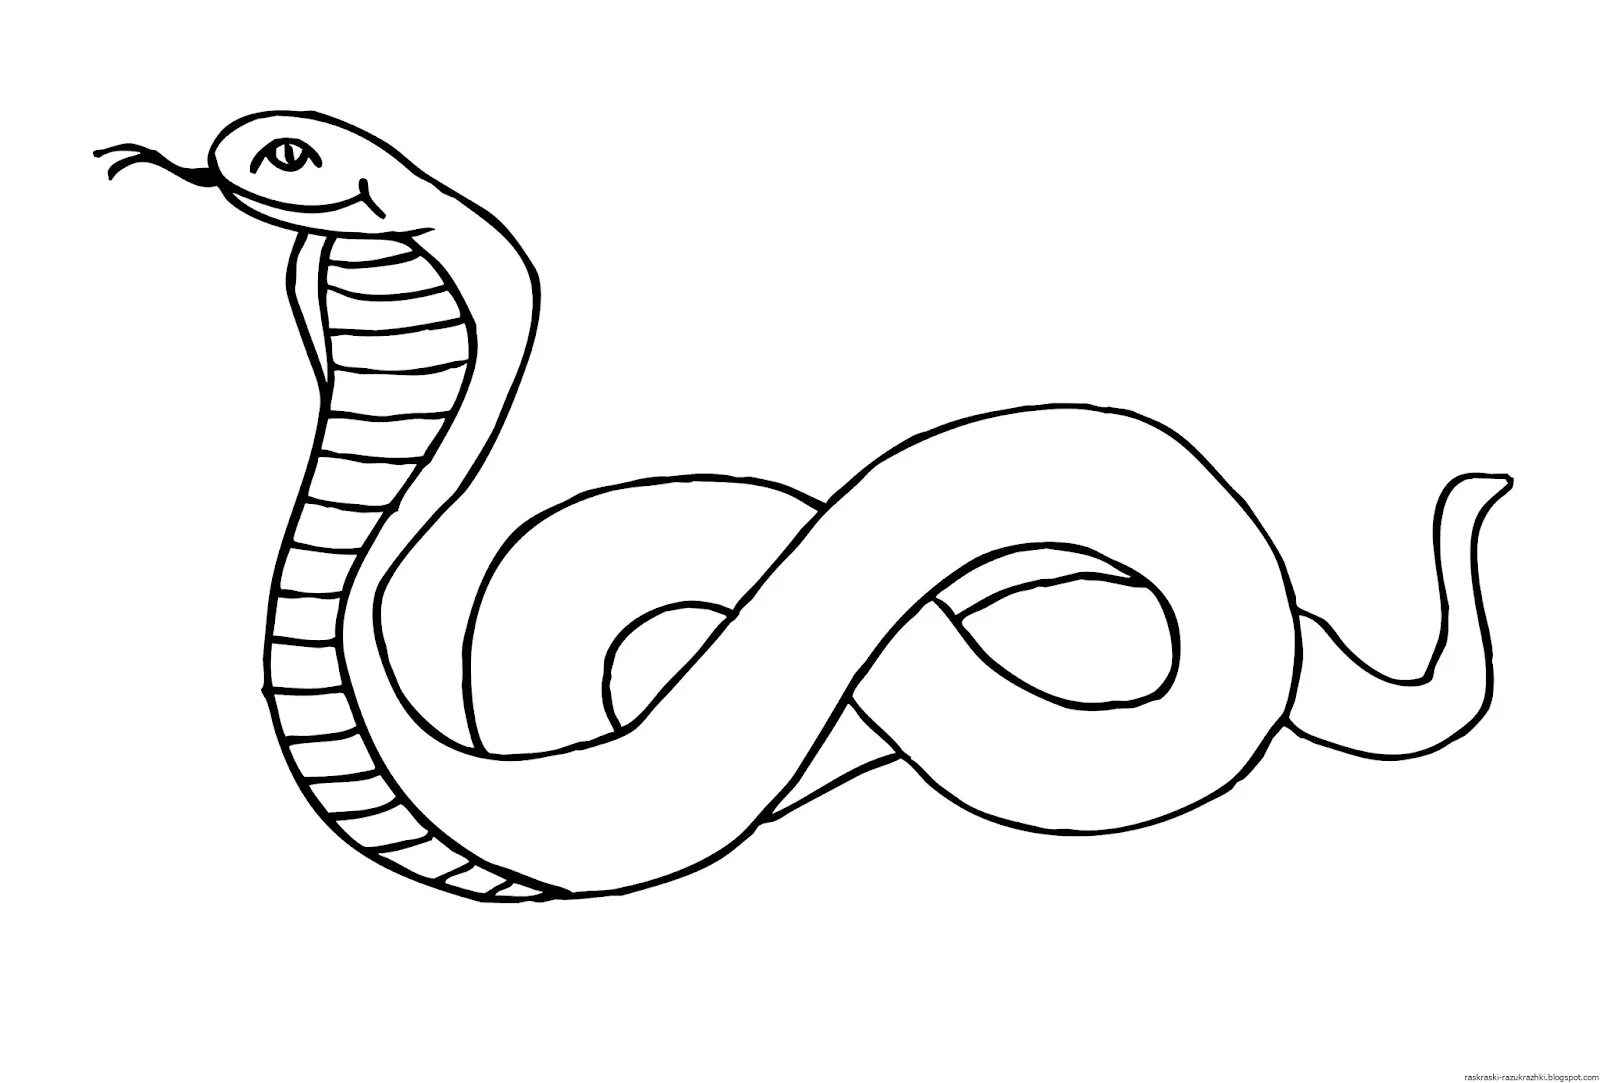 Раскраски змей распечатать. Змея раскраска. Змея раскраска для детей. Раскраска змеи для детей. Картинка змеи раскраска.